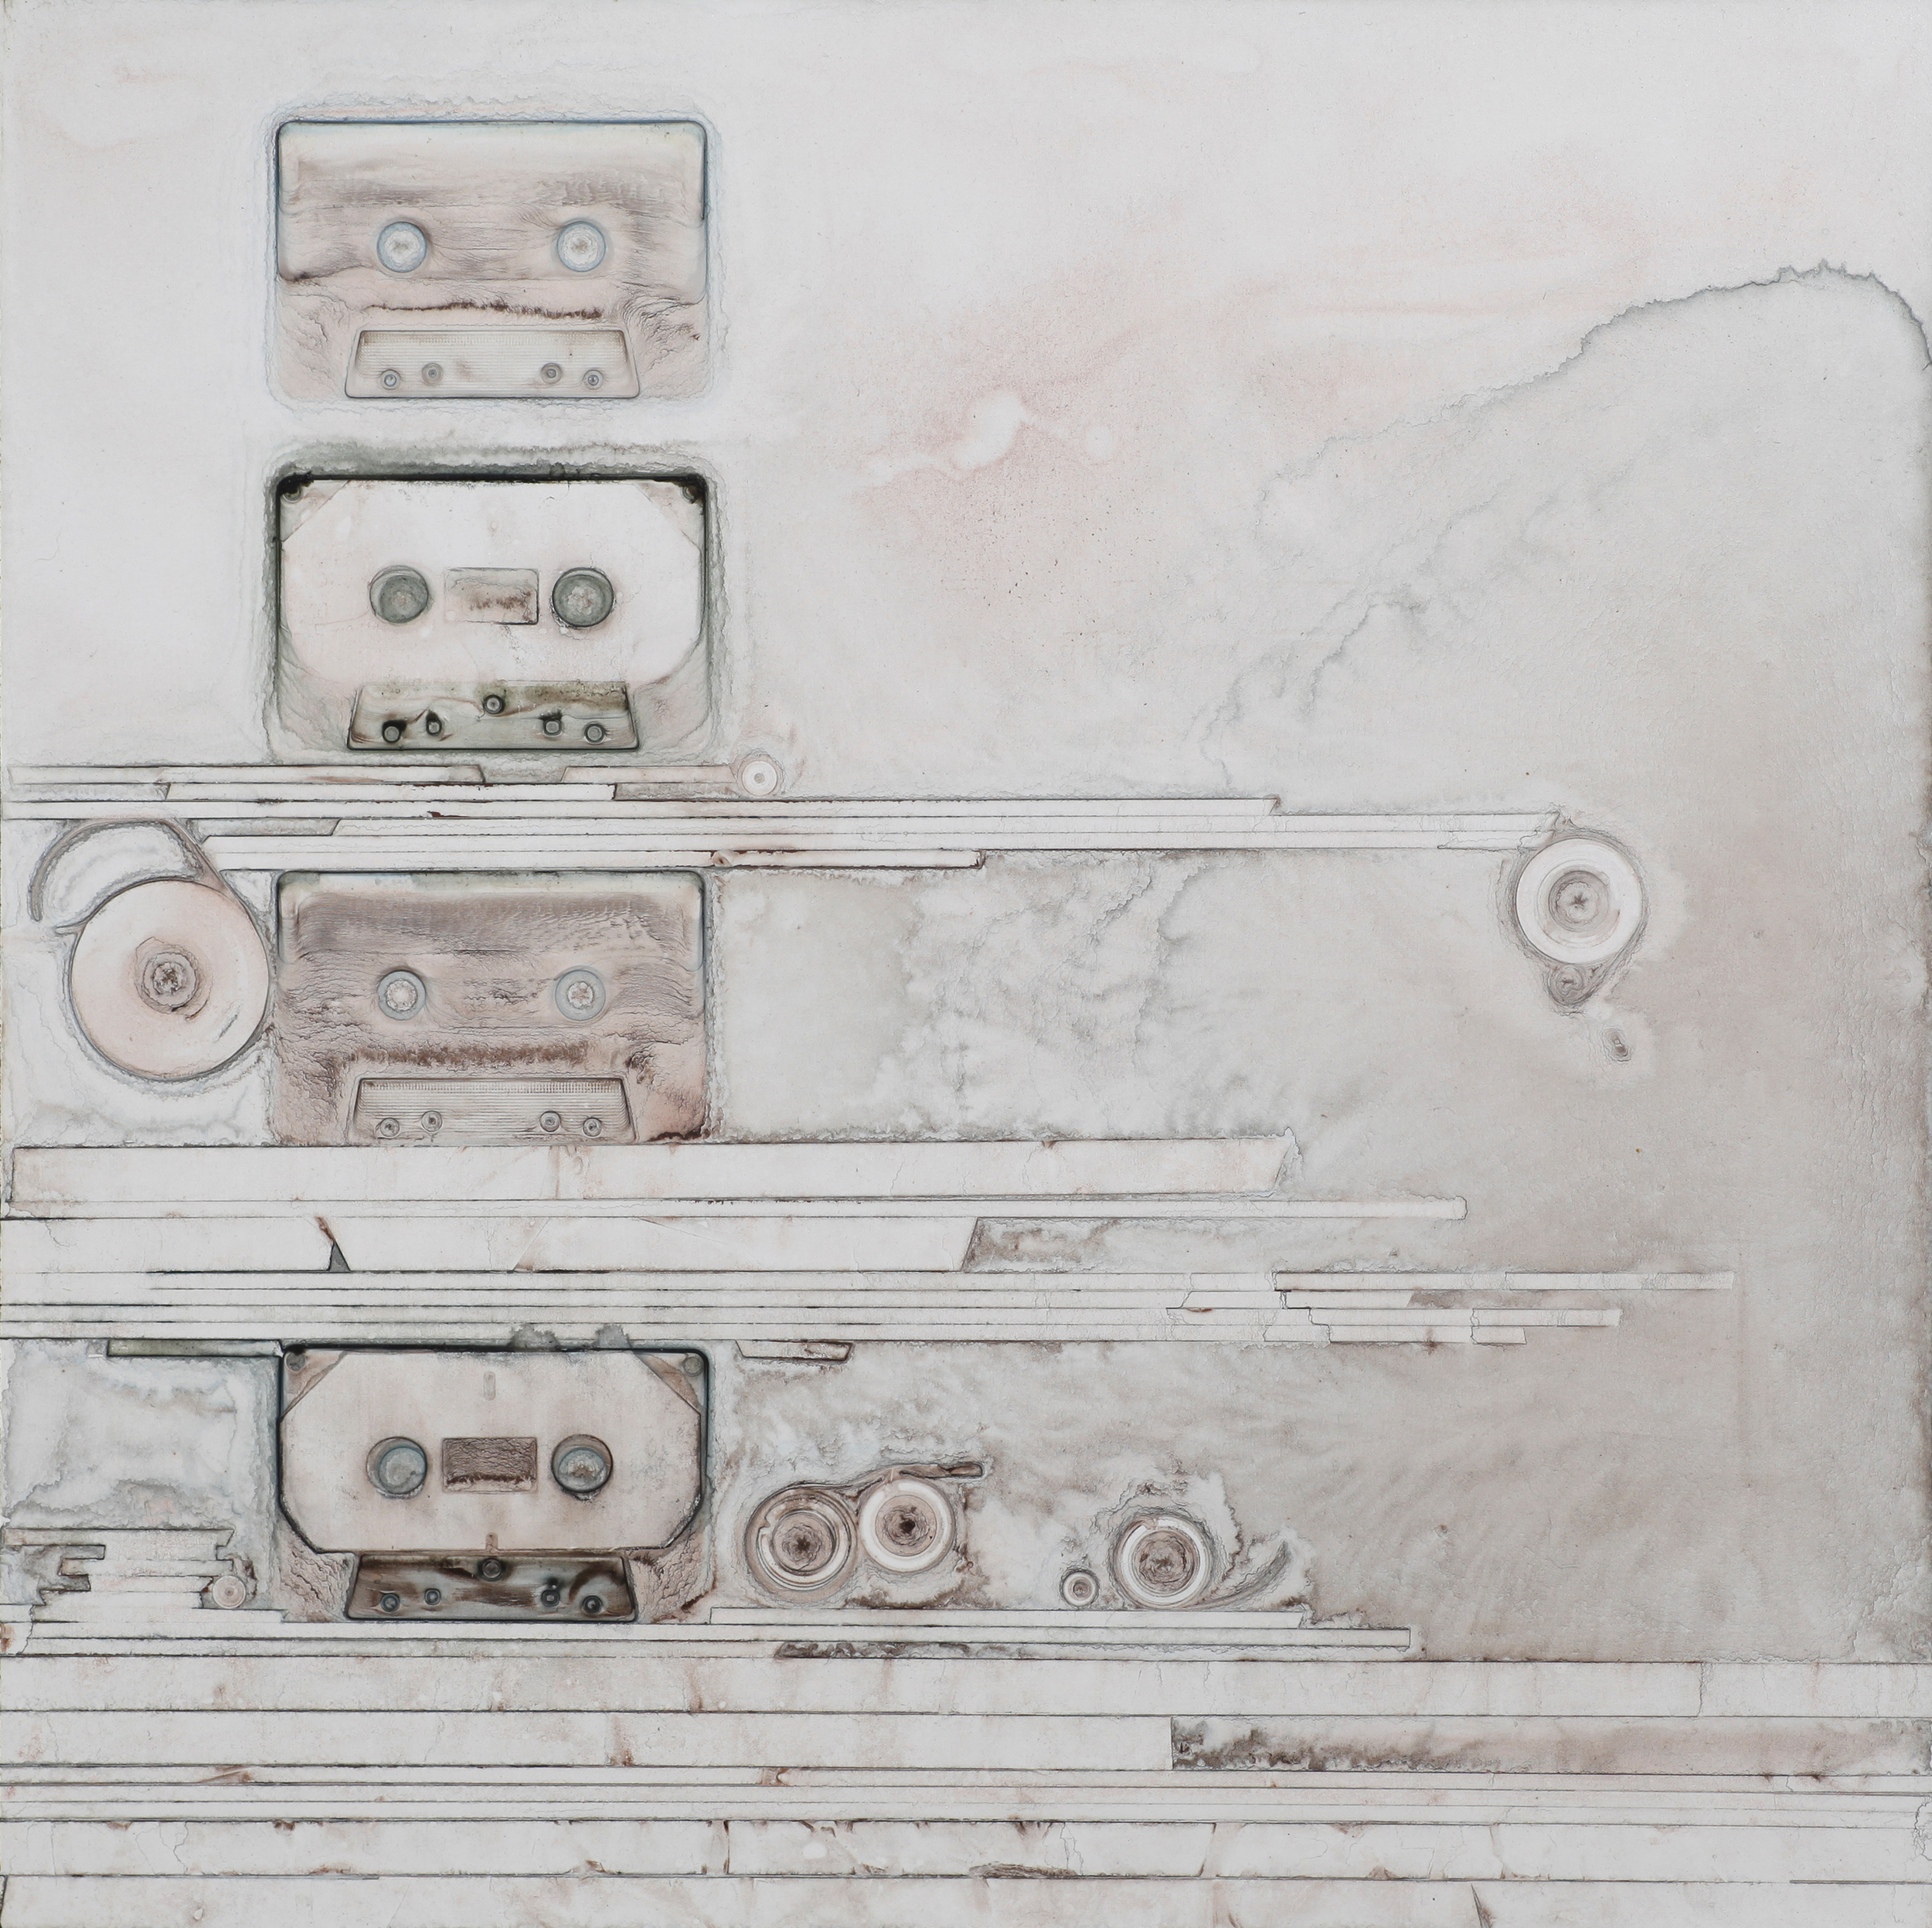   Ghost cassettes &nbsp;  |&nbsp;&nbsp;&nbsp;2013 &nbsp; | &nbsp;watercolor on panel &nbsp; | &nbsp; 18" x 18" 